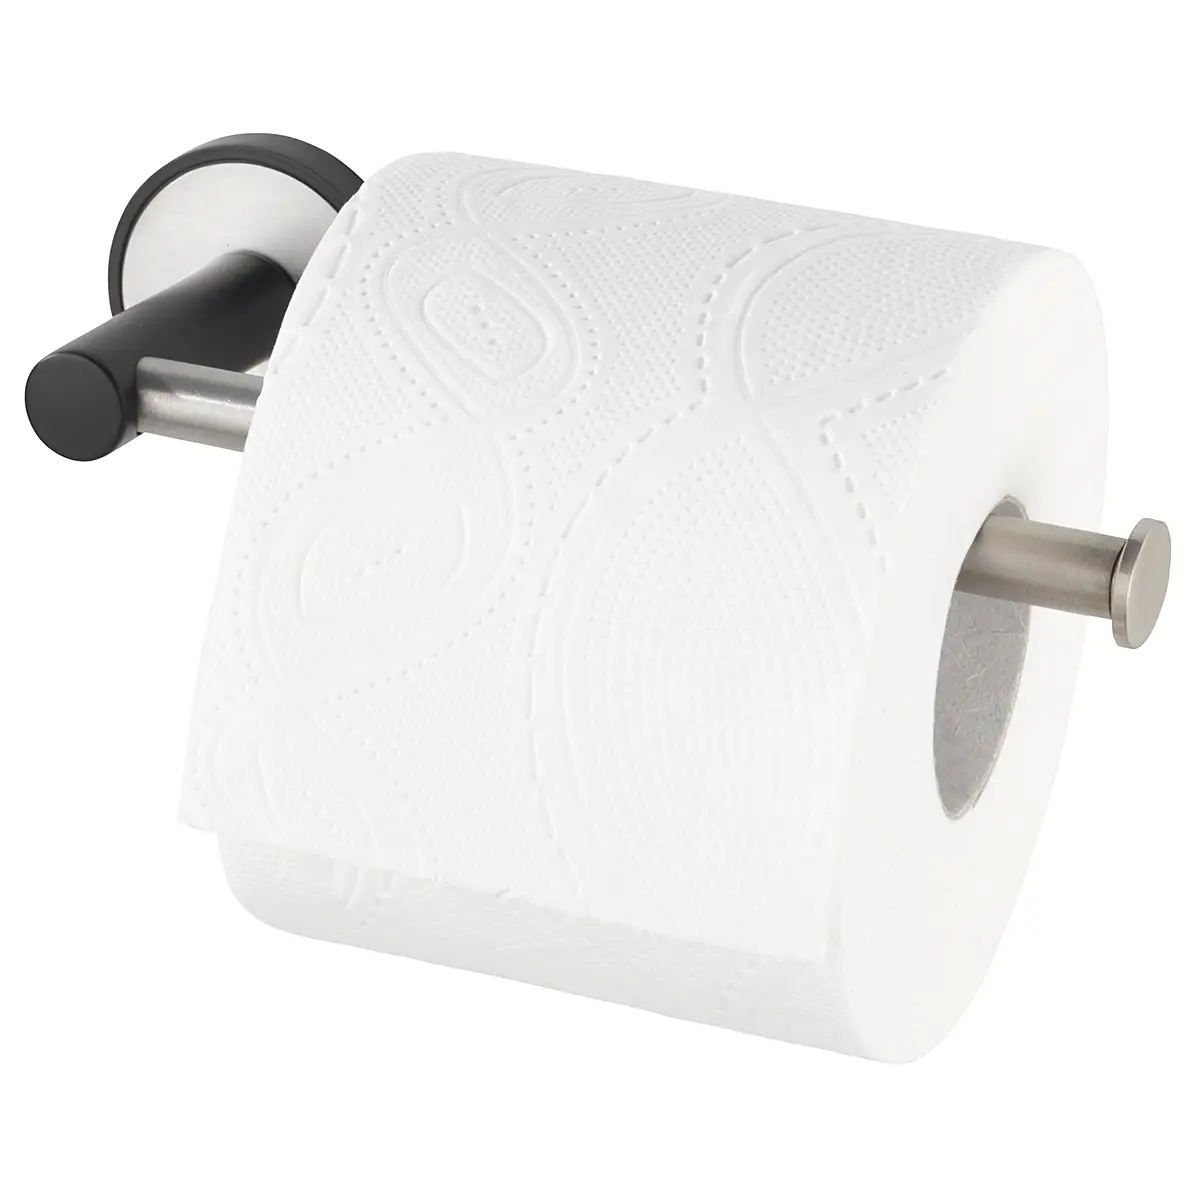 II Udine Toilettenpapierhalter